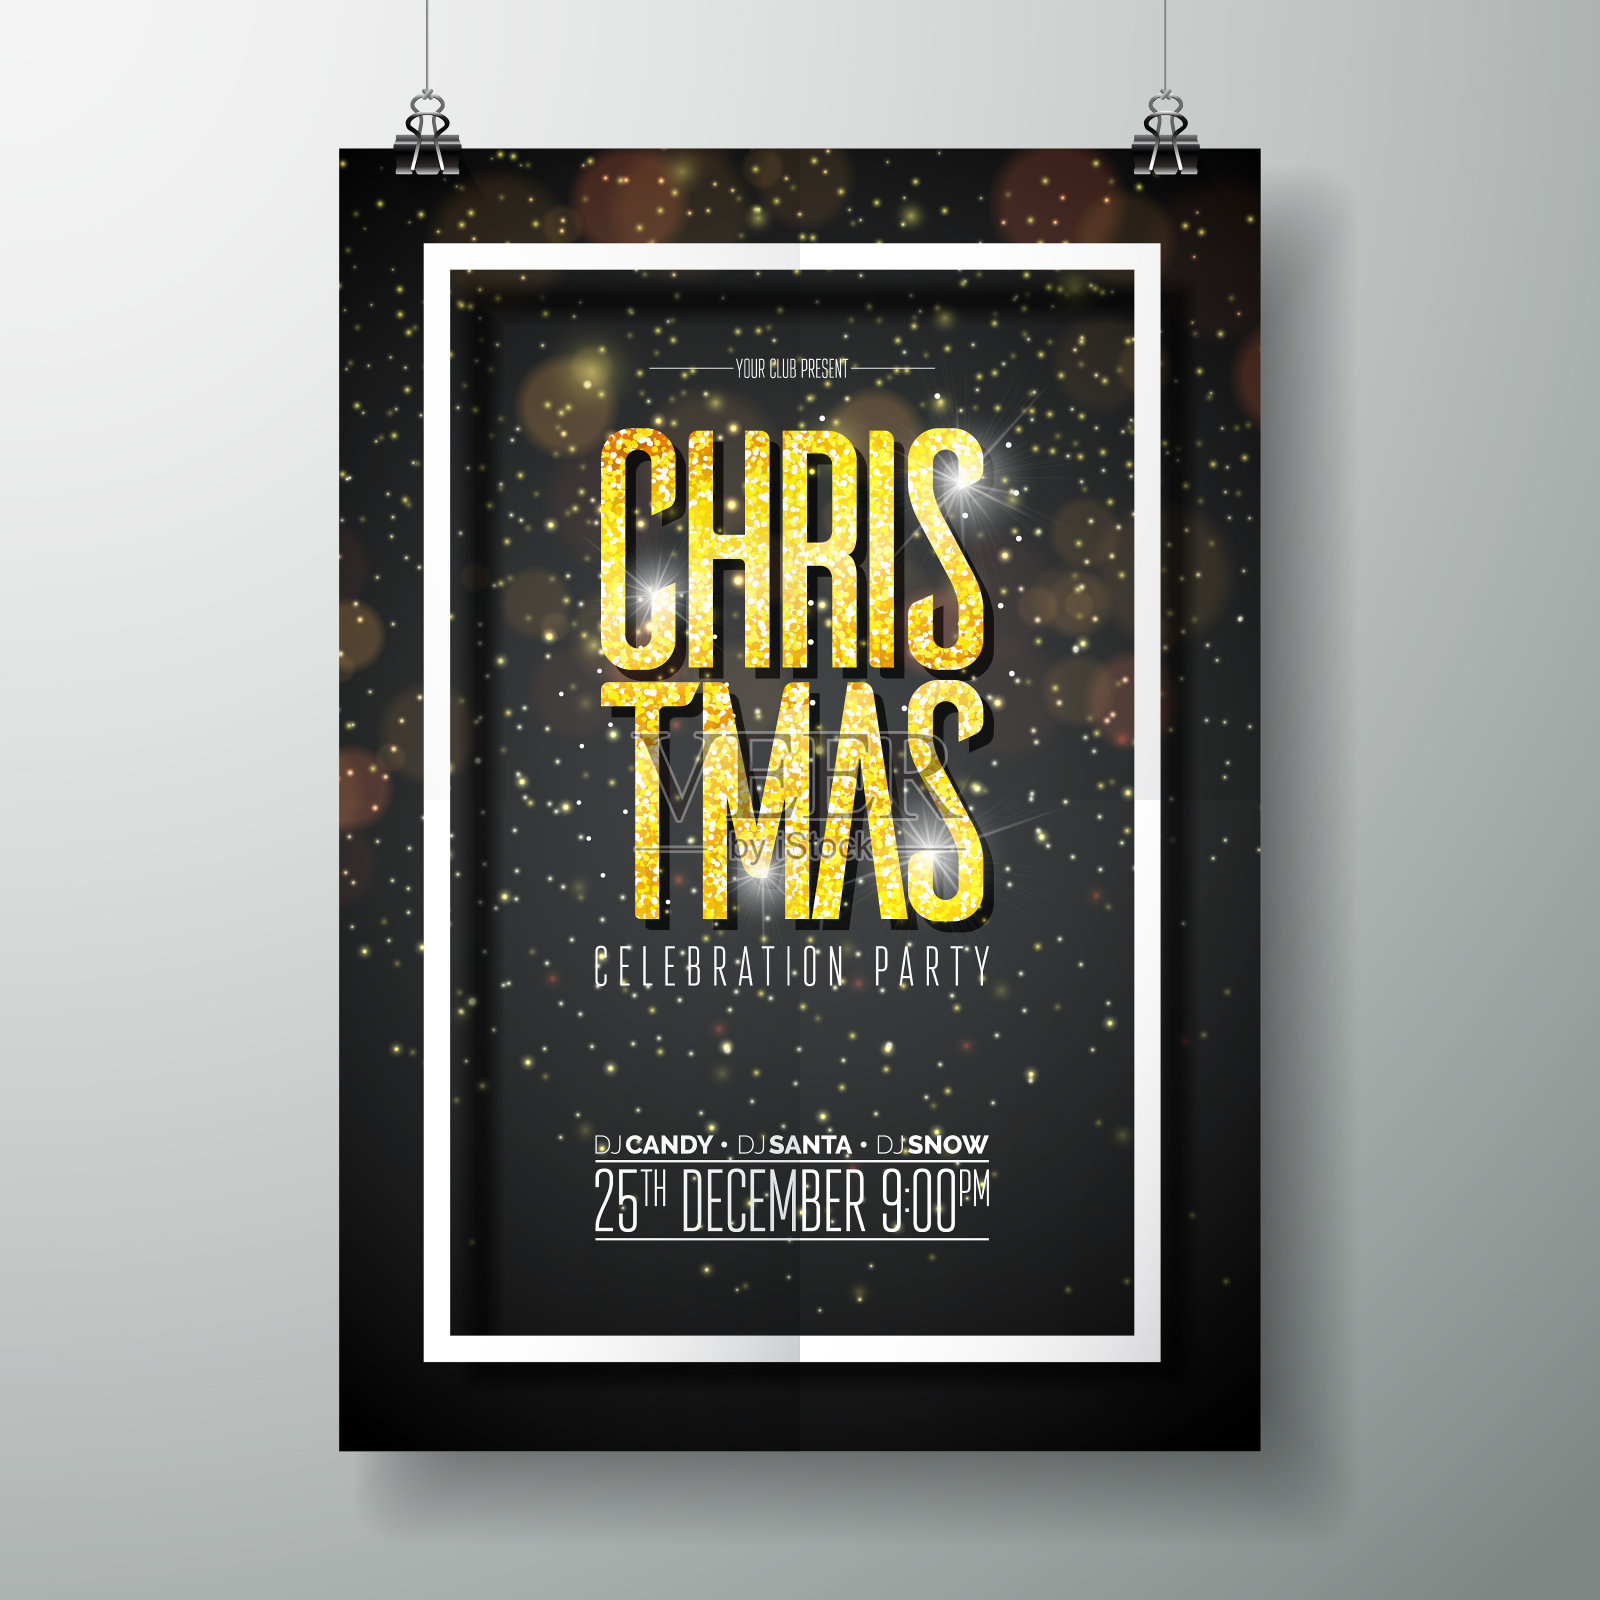 矢量圣诞晚会海报设计模板与节日排版元素和闪亮的灯光在黑暗的背景。设计模板素材